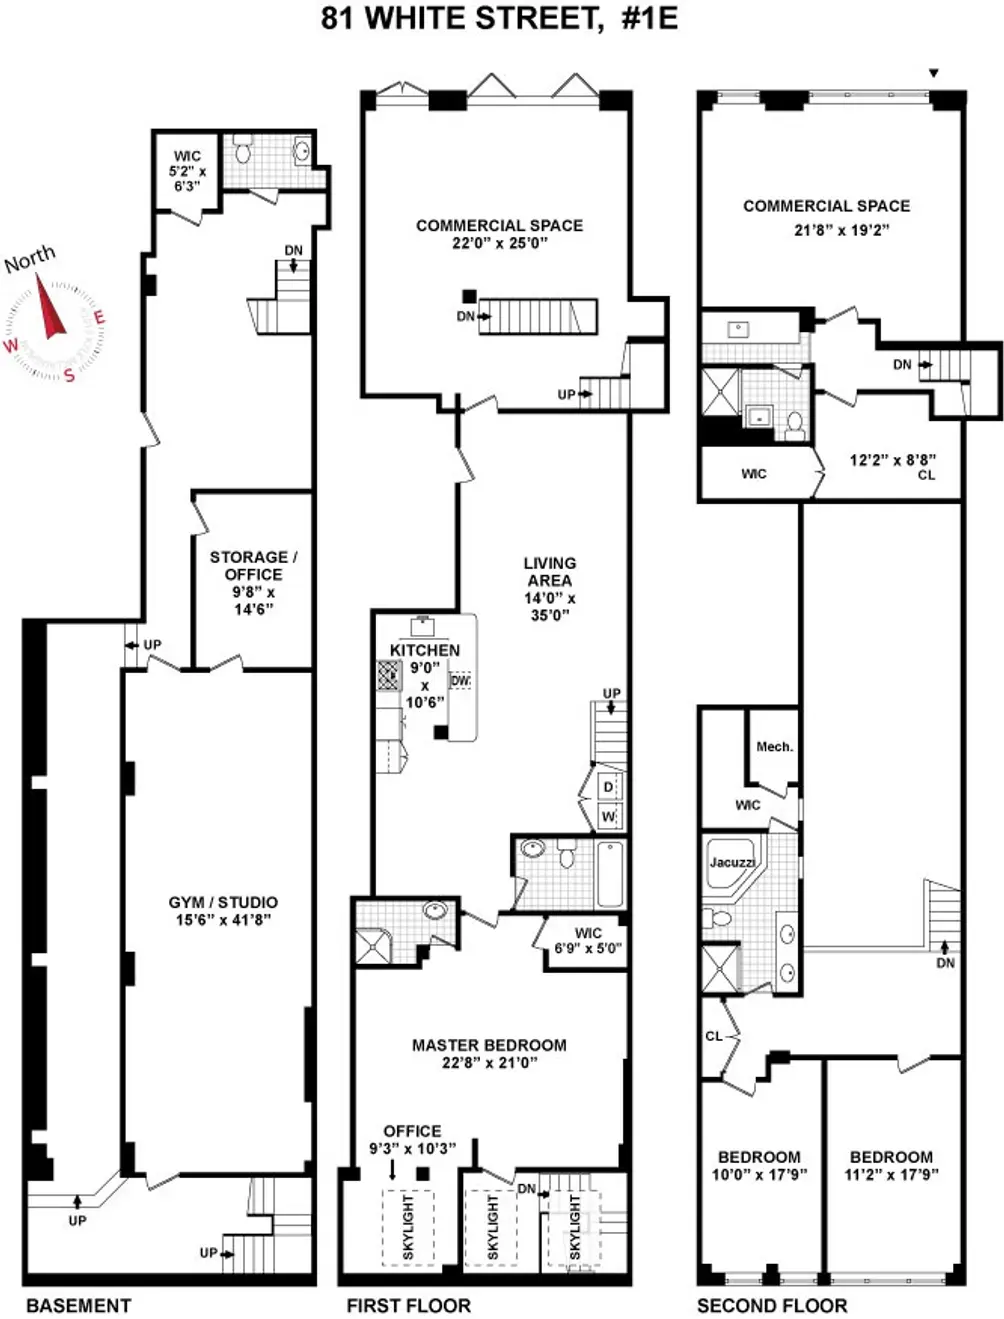 79 White Street #1E floor plan